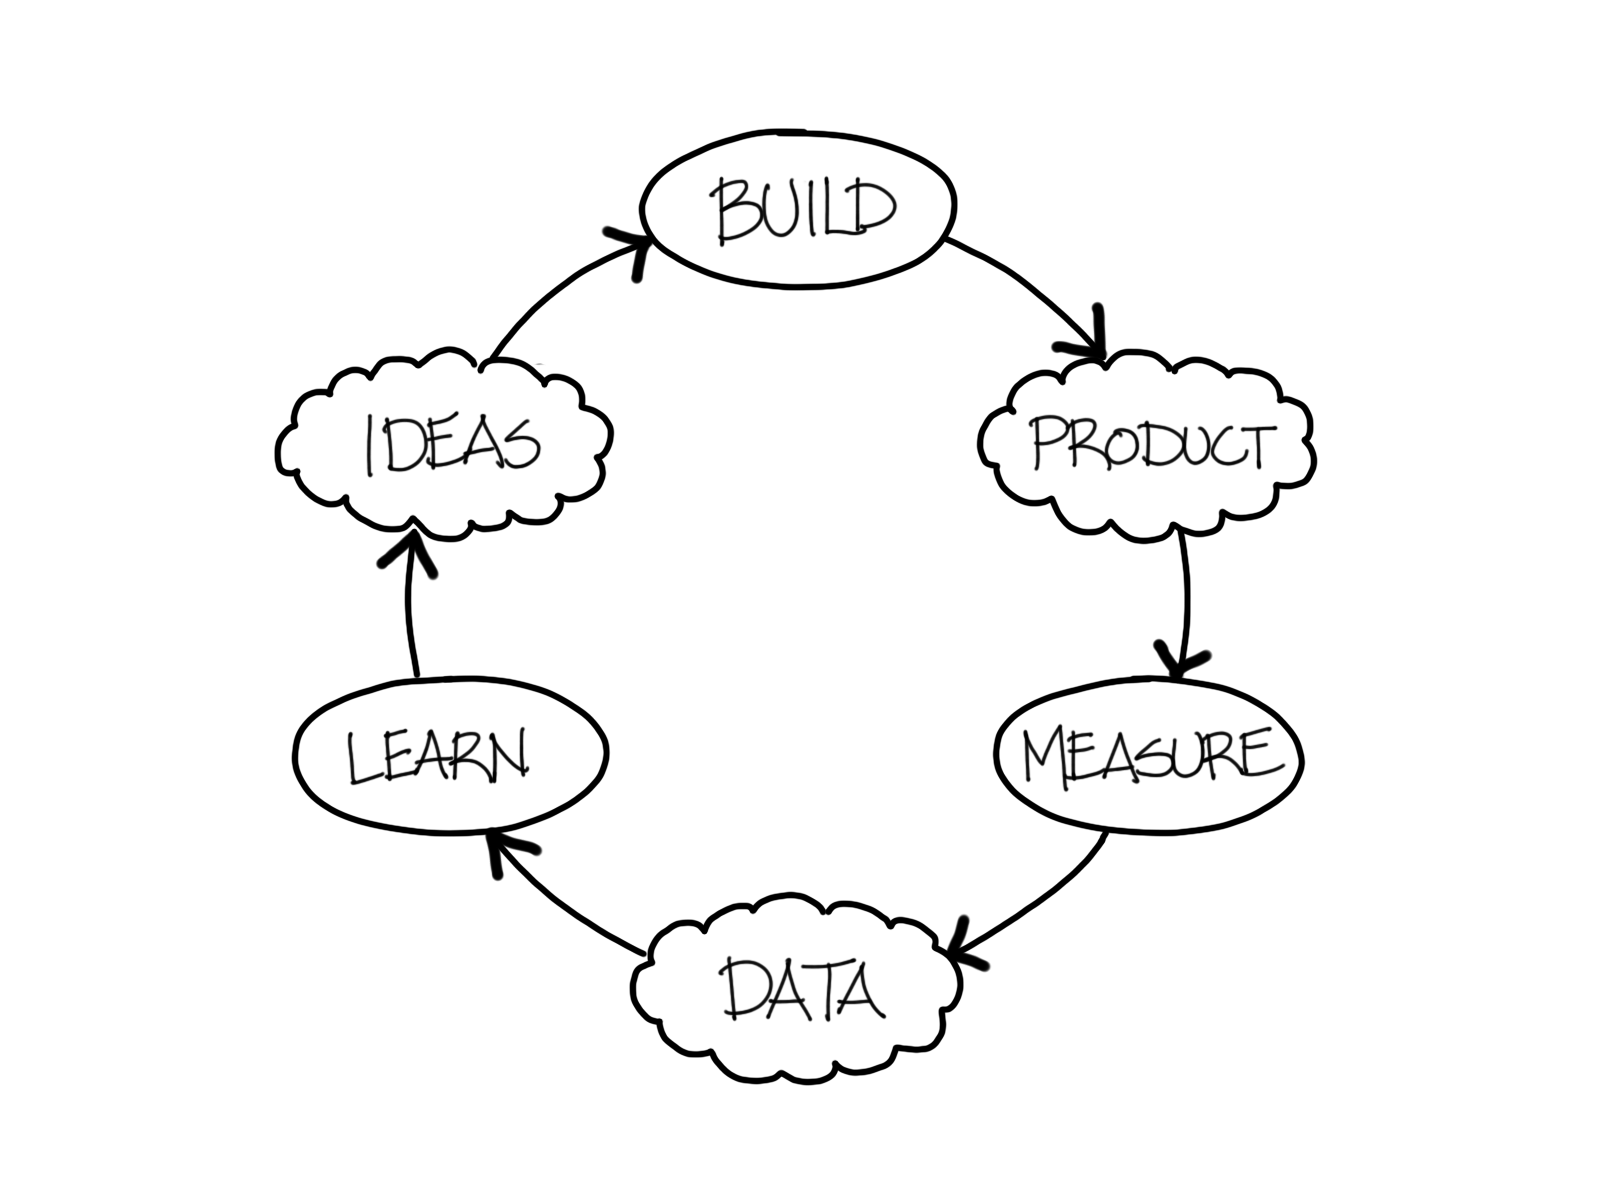 Build measure learn loop